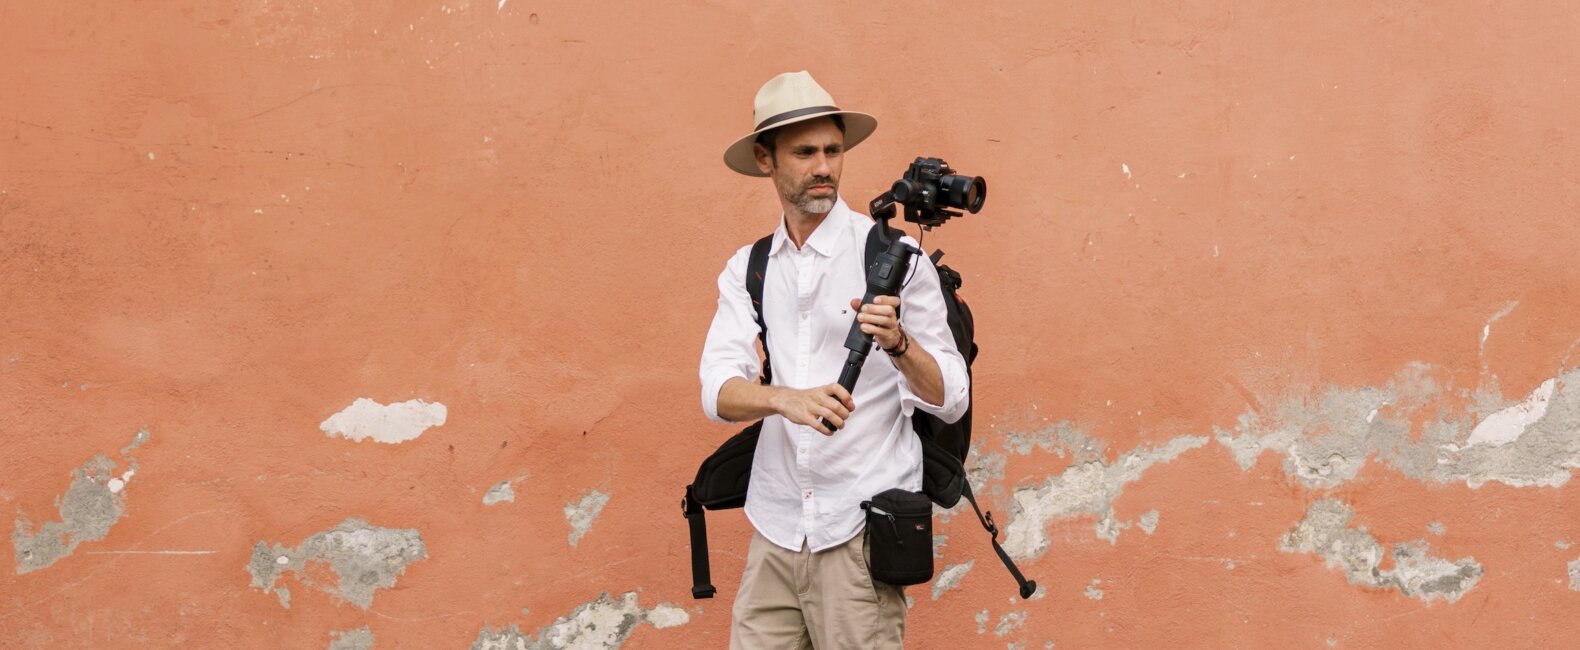 Filmmaker Rodrigo Zadro